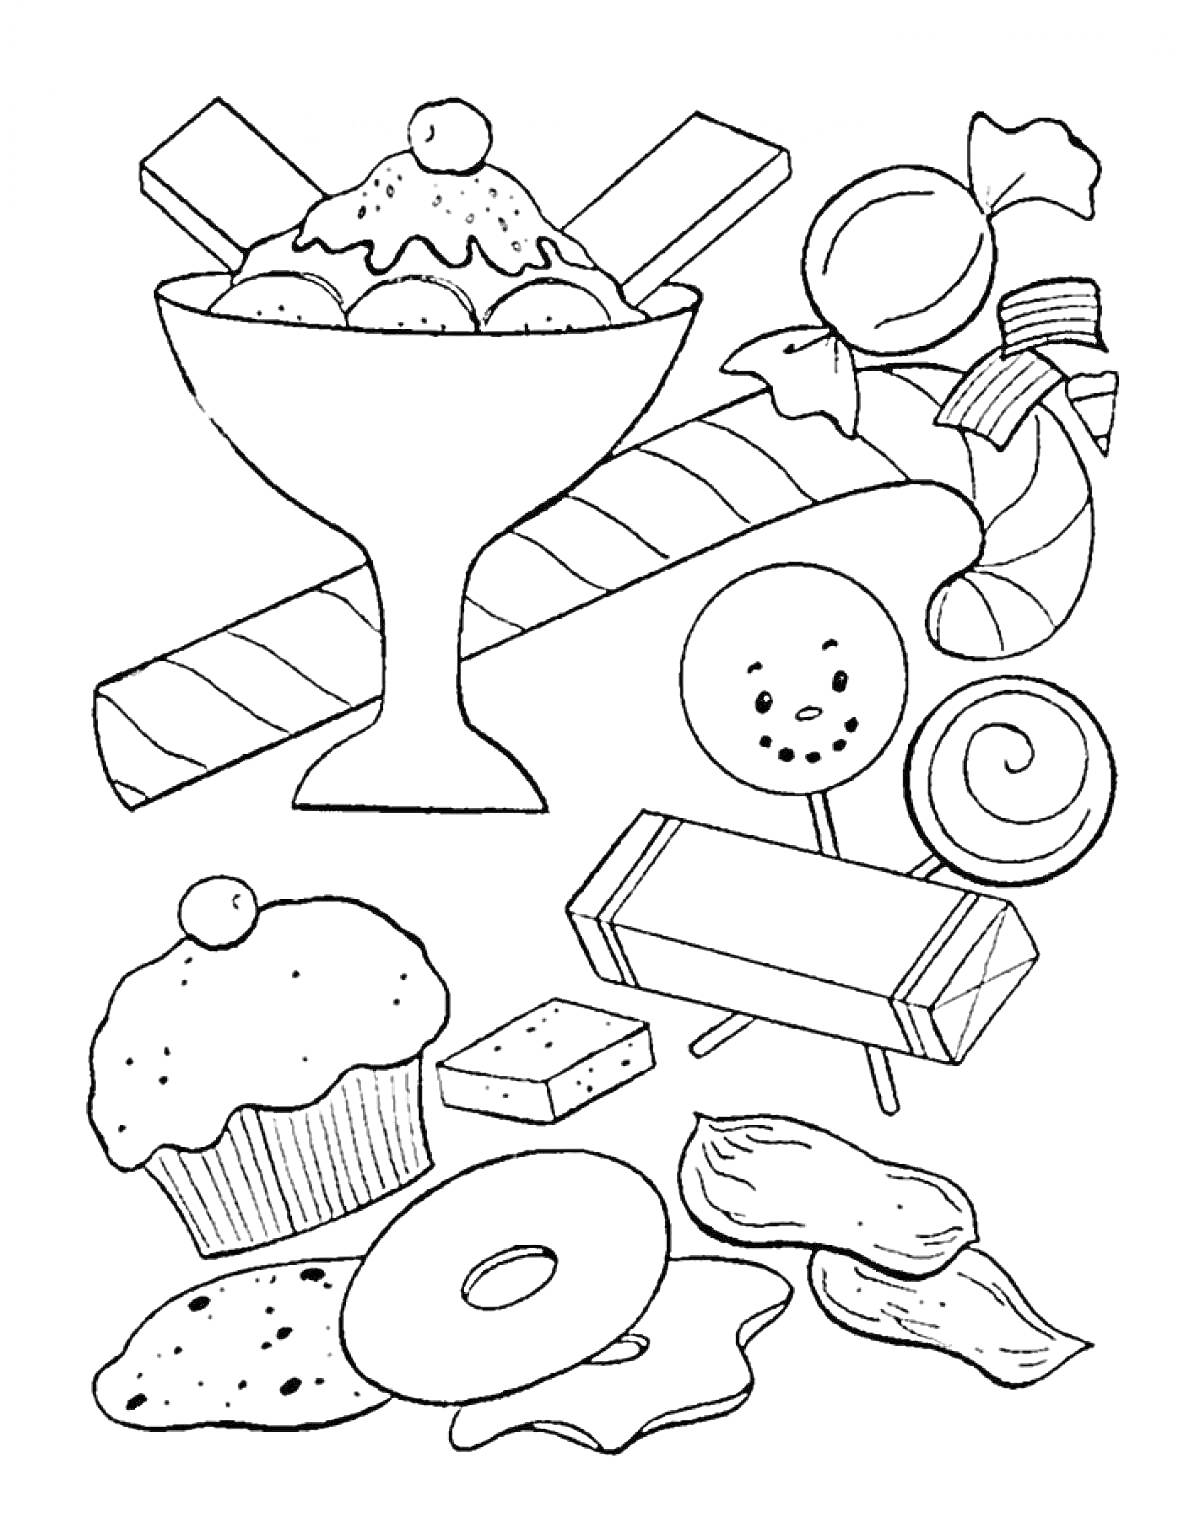 мороженое в стакане, карамельные трости, конфеты, кекс, печенье, леденцы, плитка шоколада, пончик